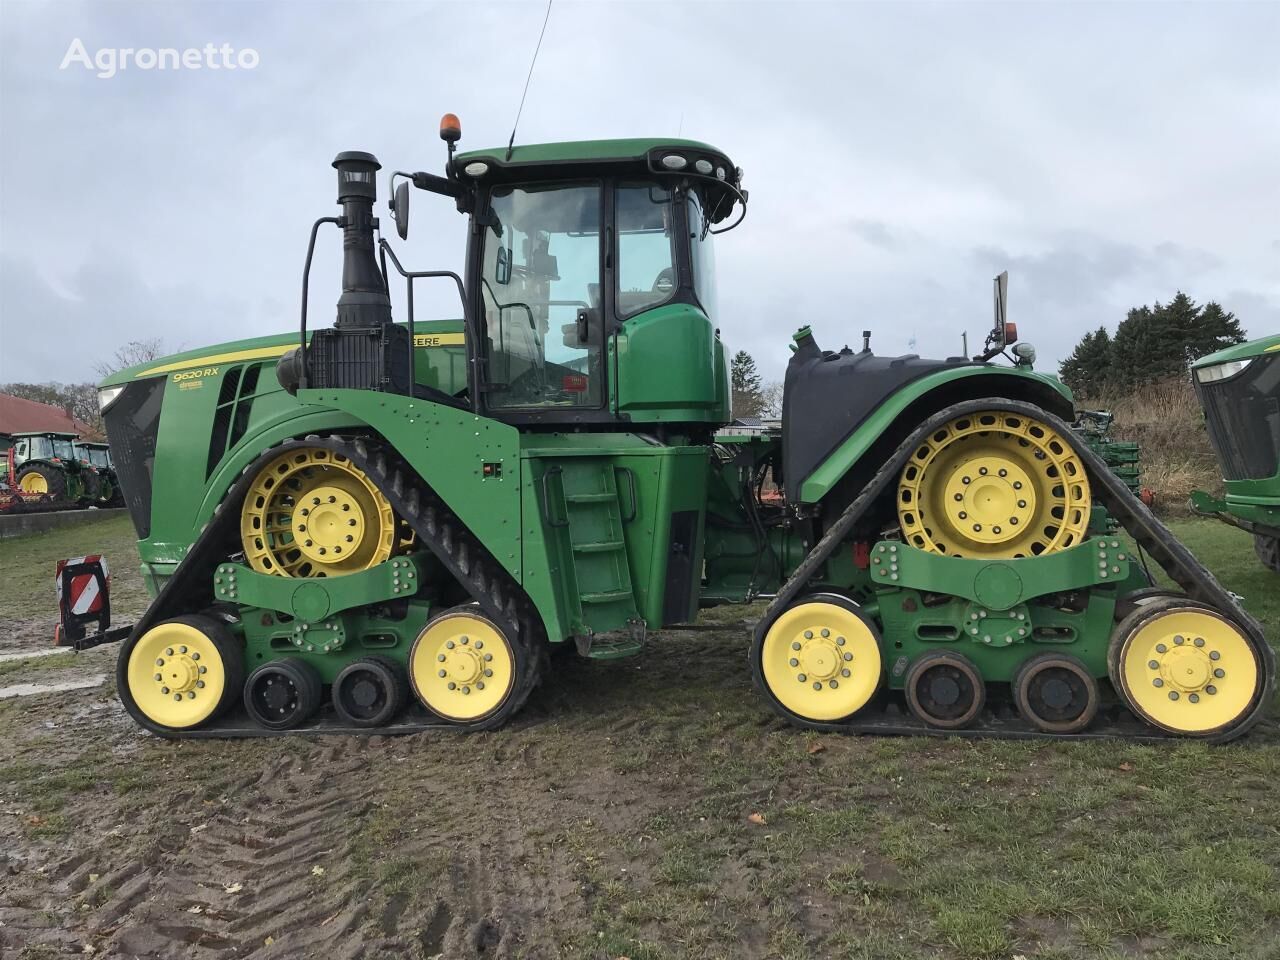 9620RX wheel tractor